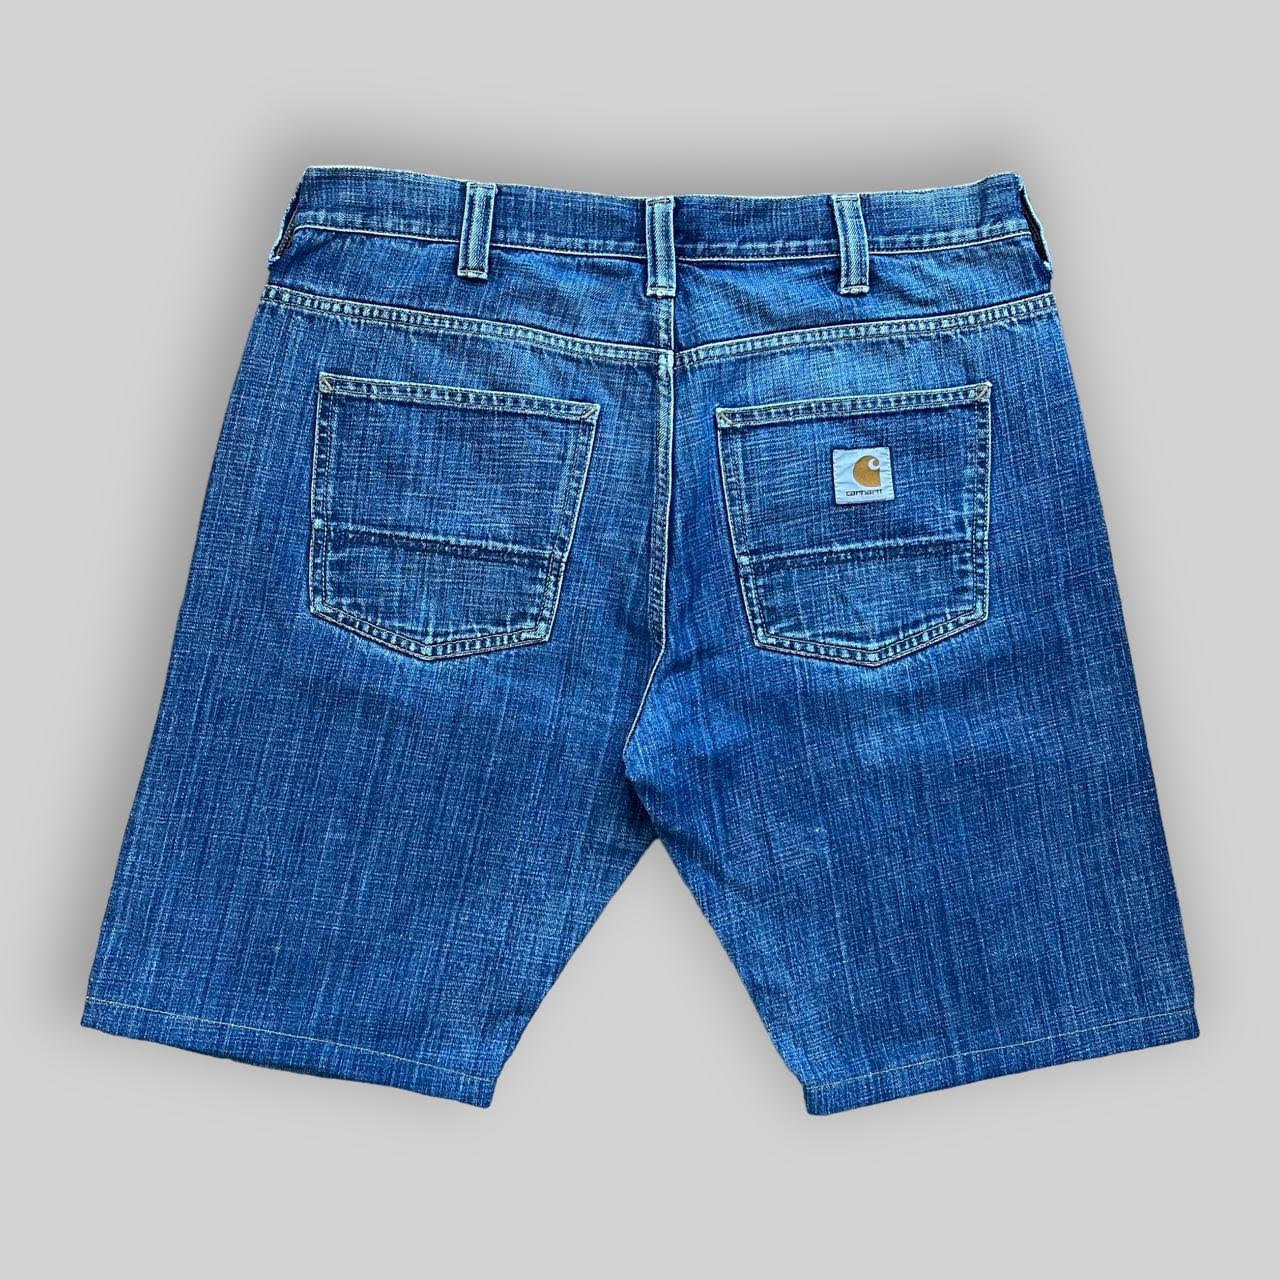 Carhartt Denim Jeans Shorts (36)